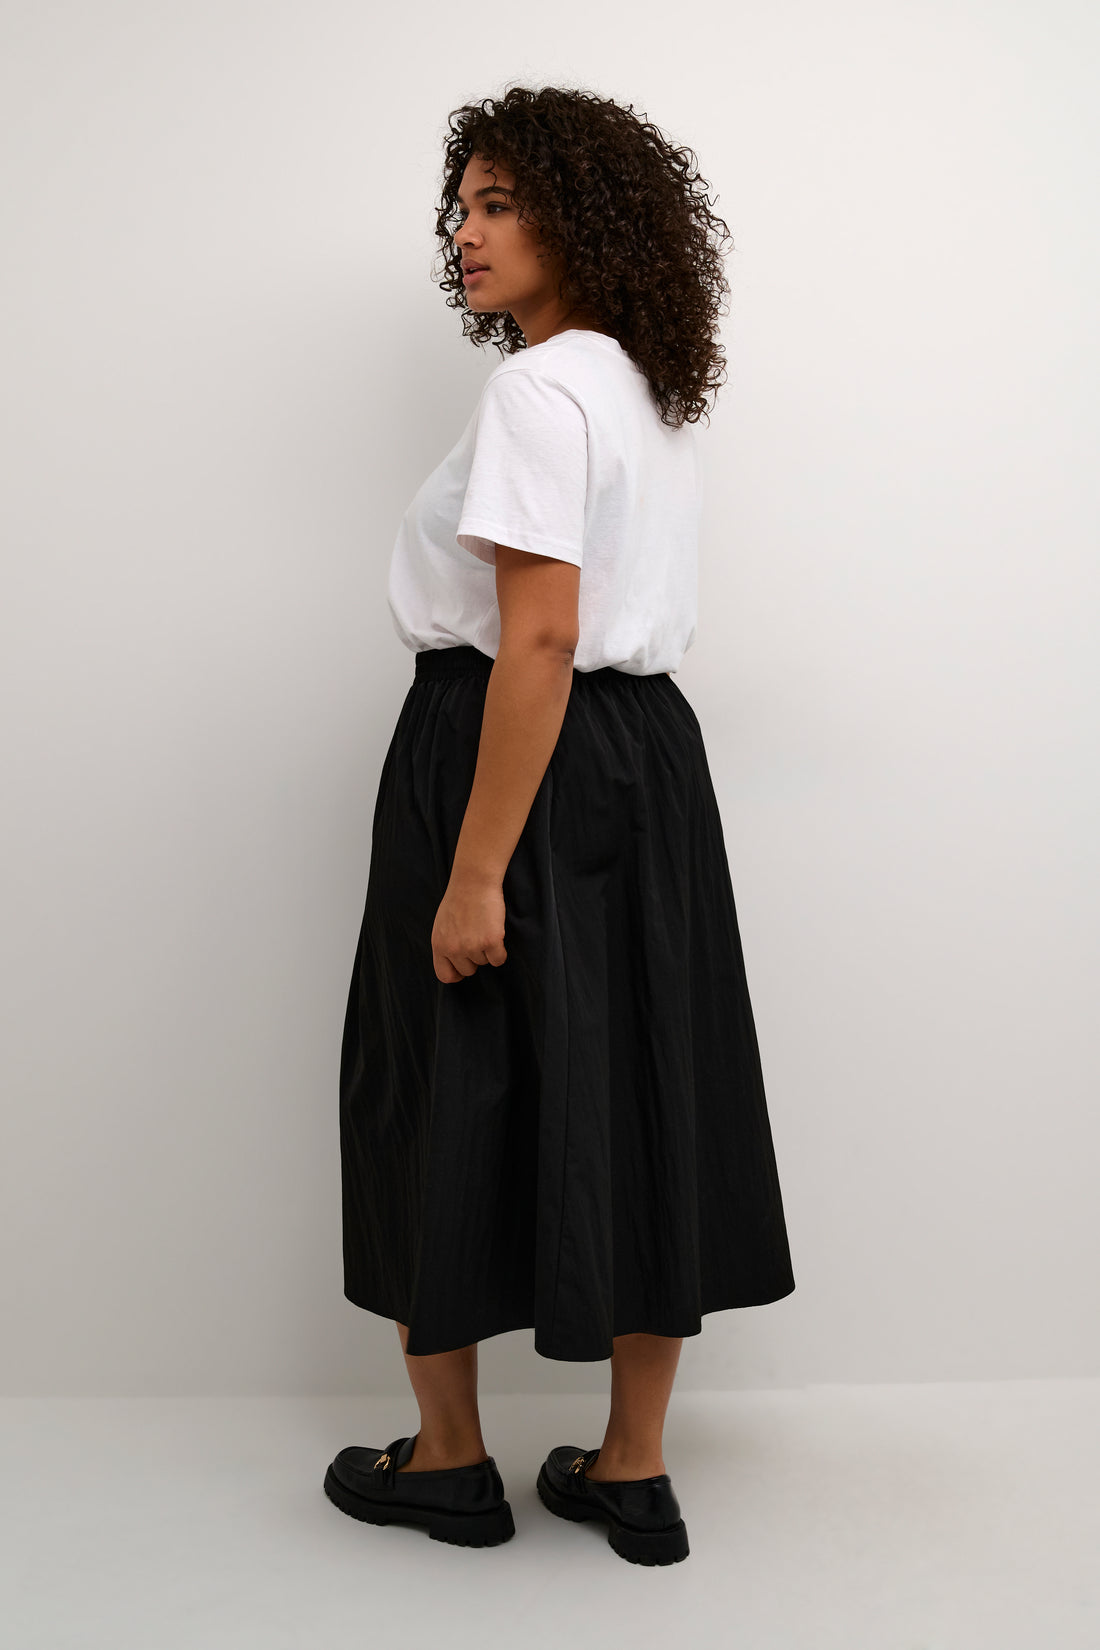 KCreva Skirt